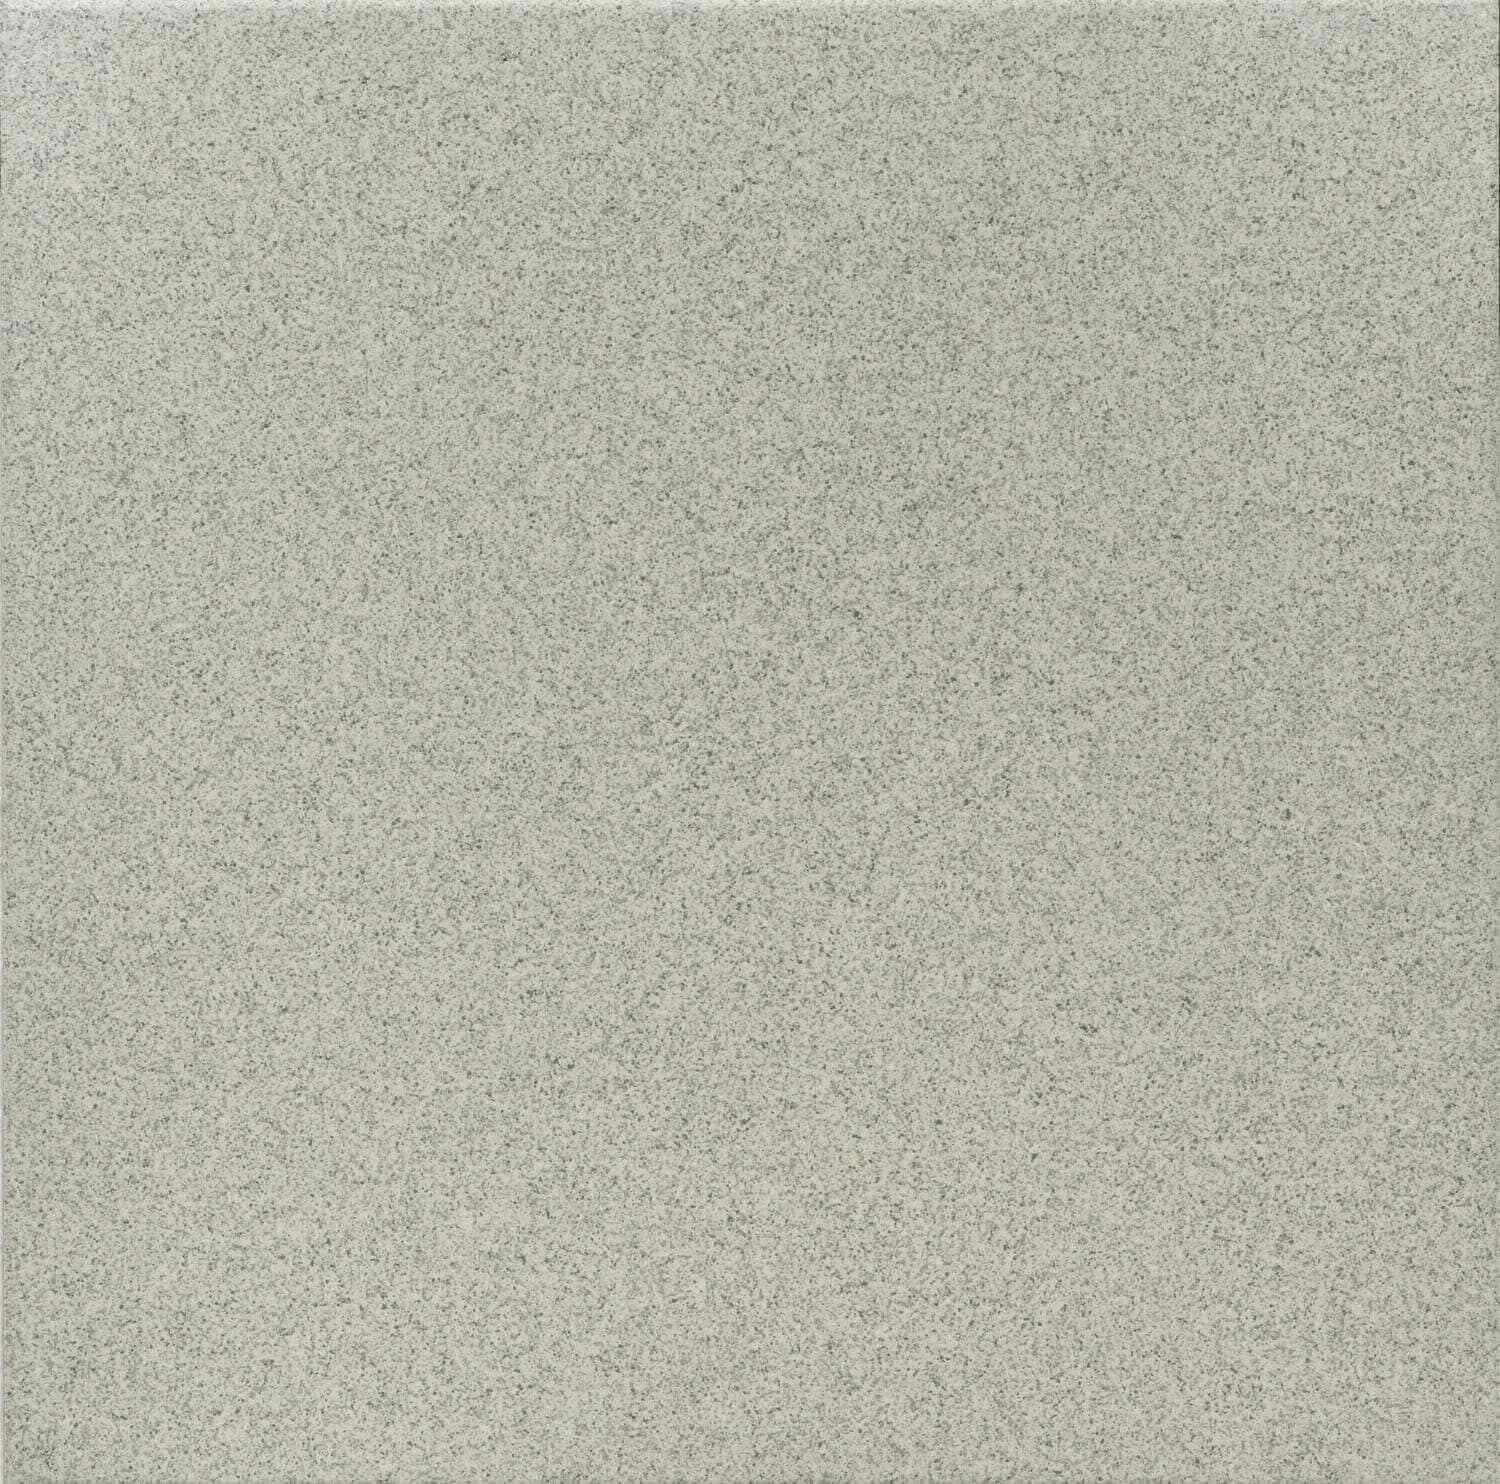 Dorset Woolliscroft Flat Steel Grey Slip Resistant Quarry Tile 300x300mm